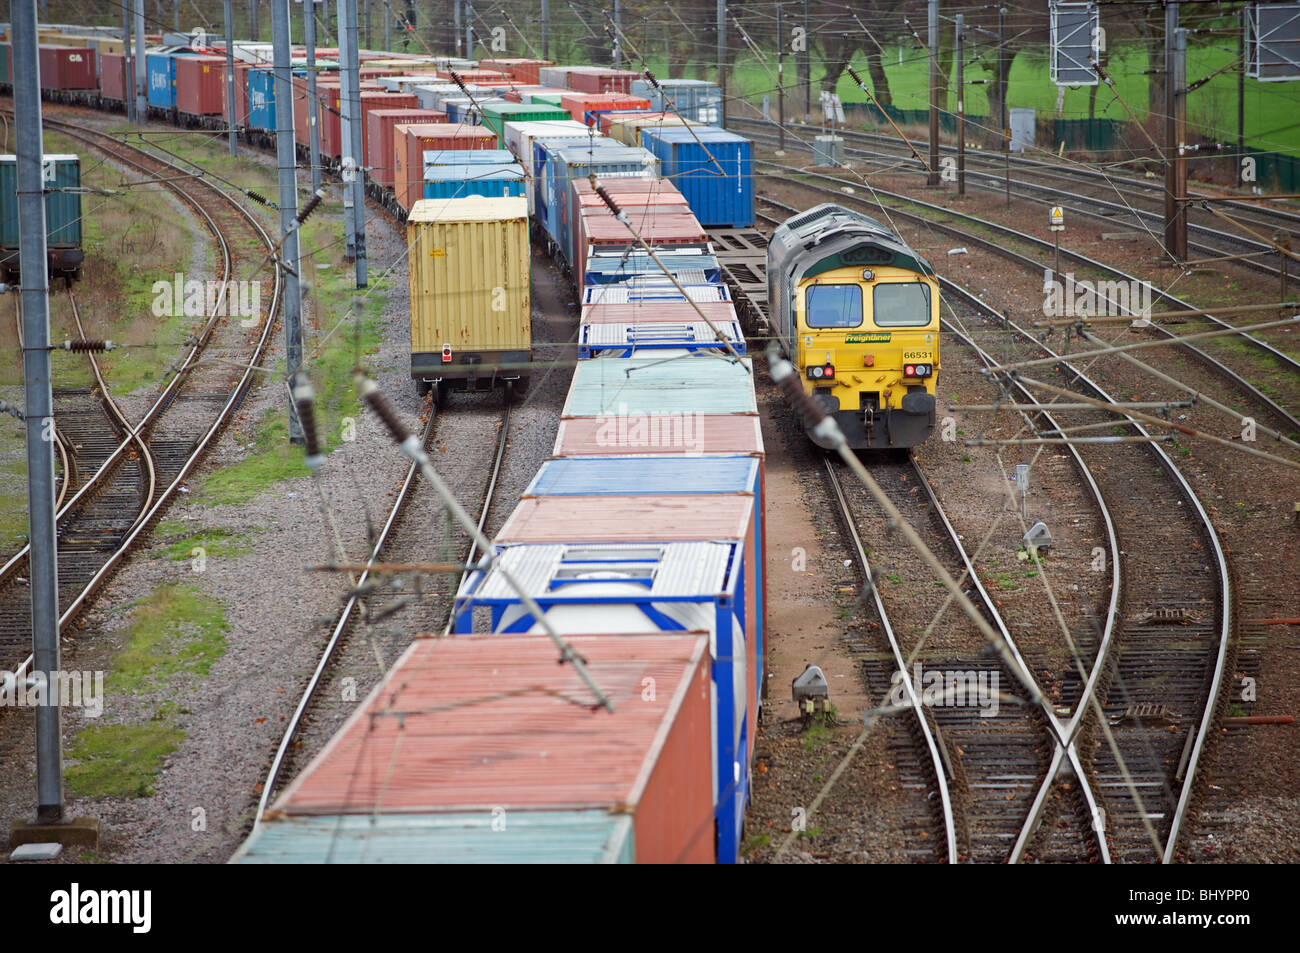 Goods train, UK. Stock Photo